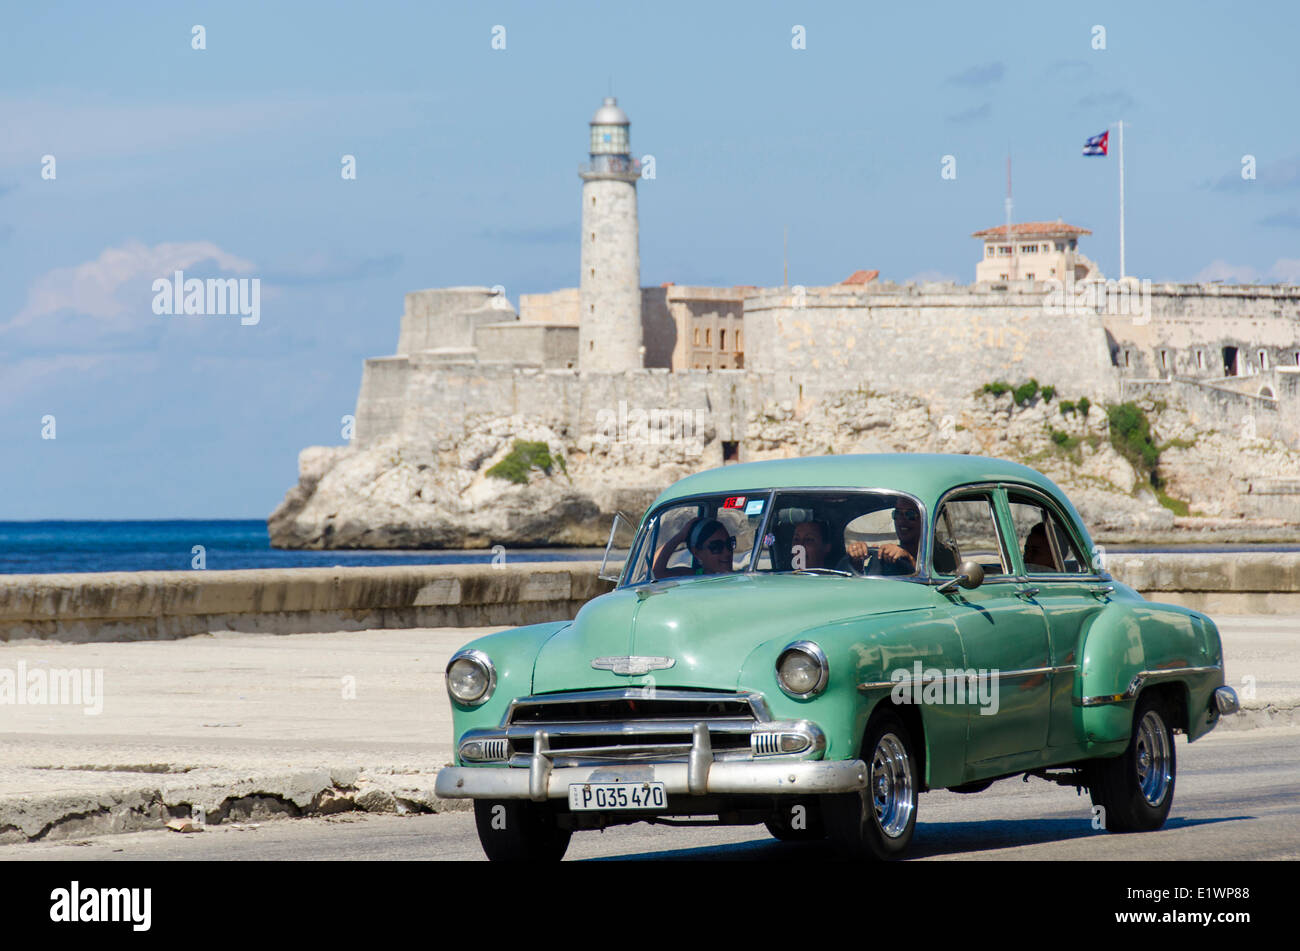 Amerikanische Oldtimer Alomg Malecon, ist dahinter Morro Castle, eine malerische Festung bewachen den Eingang zur Havana Bucht, Hav Stockfoto